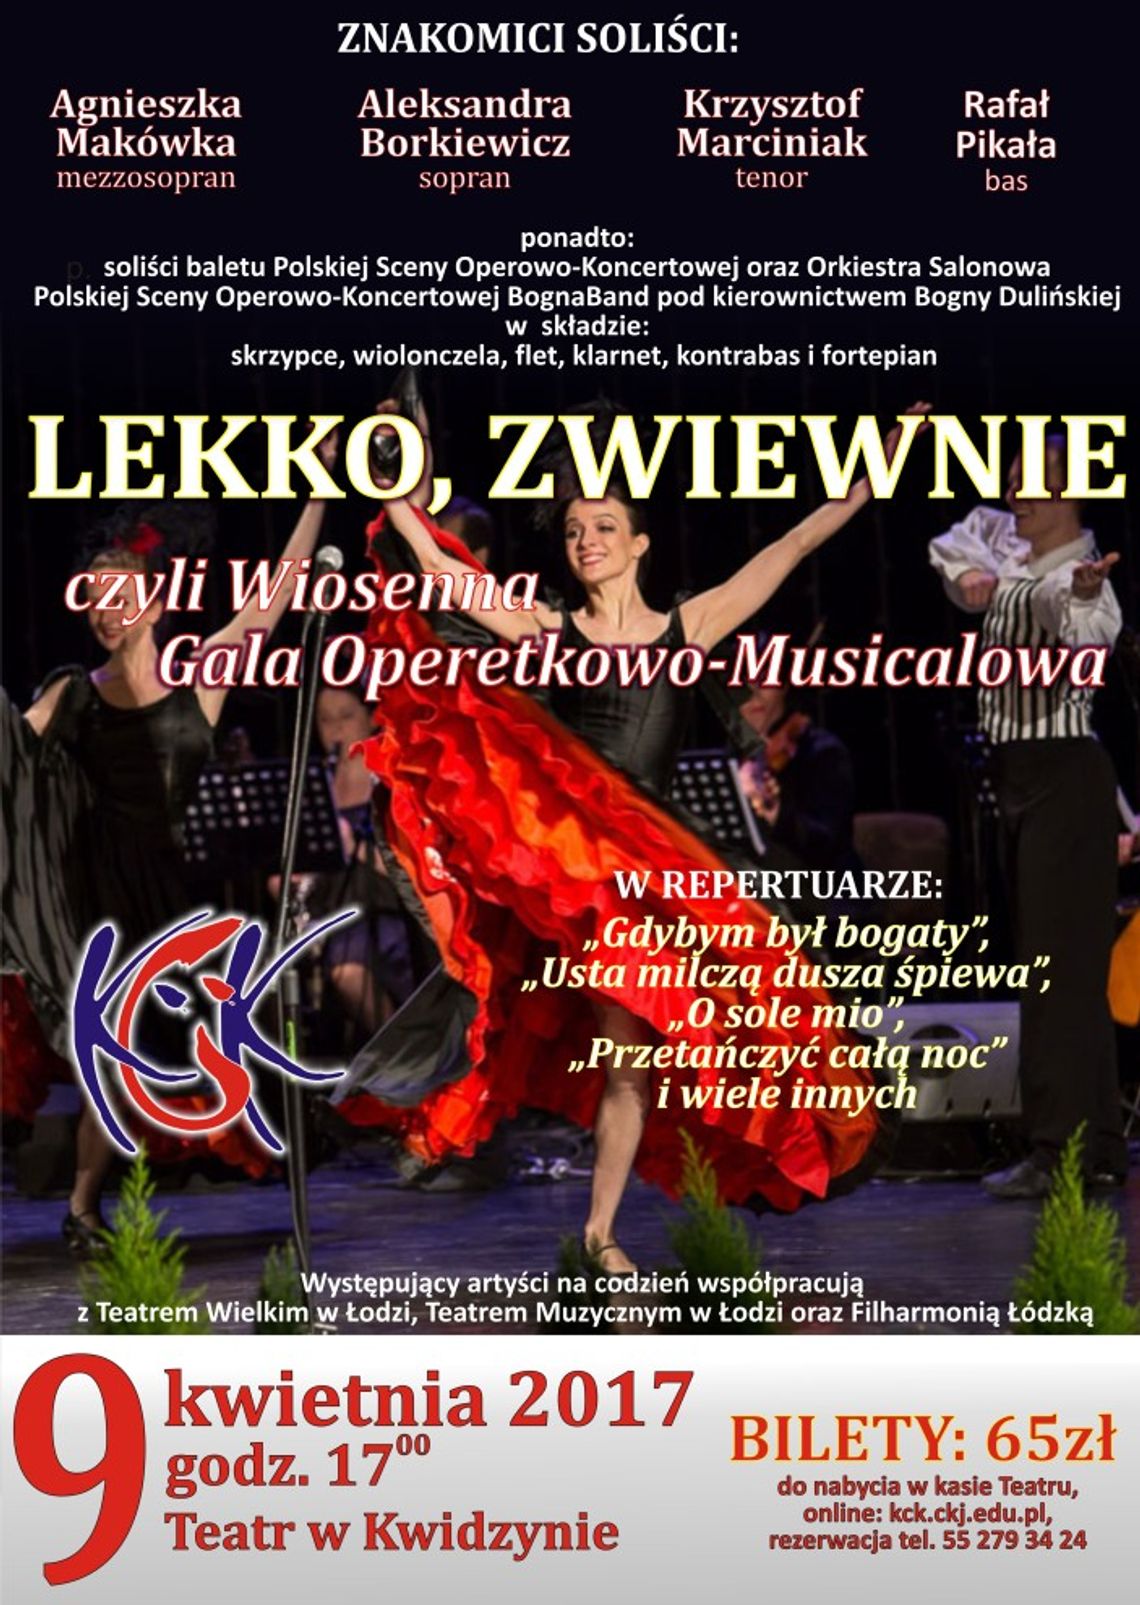 Wiosenna Gala Operetkowo-Musicalowa